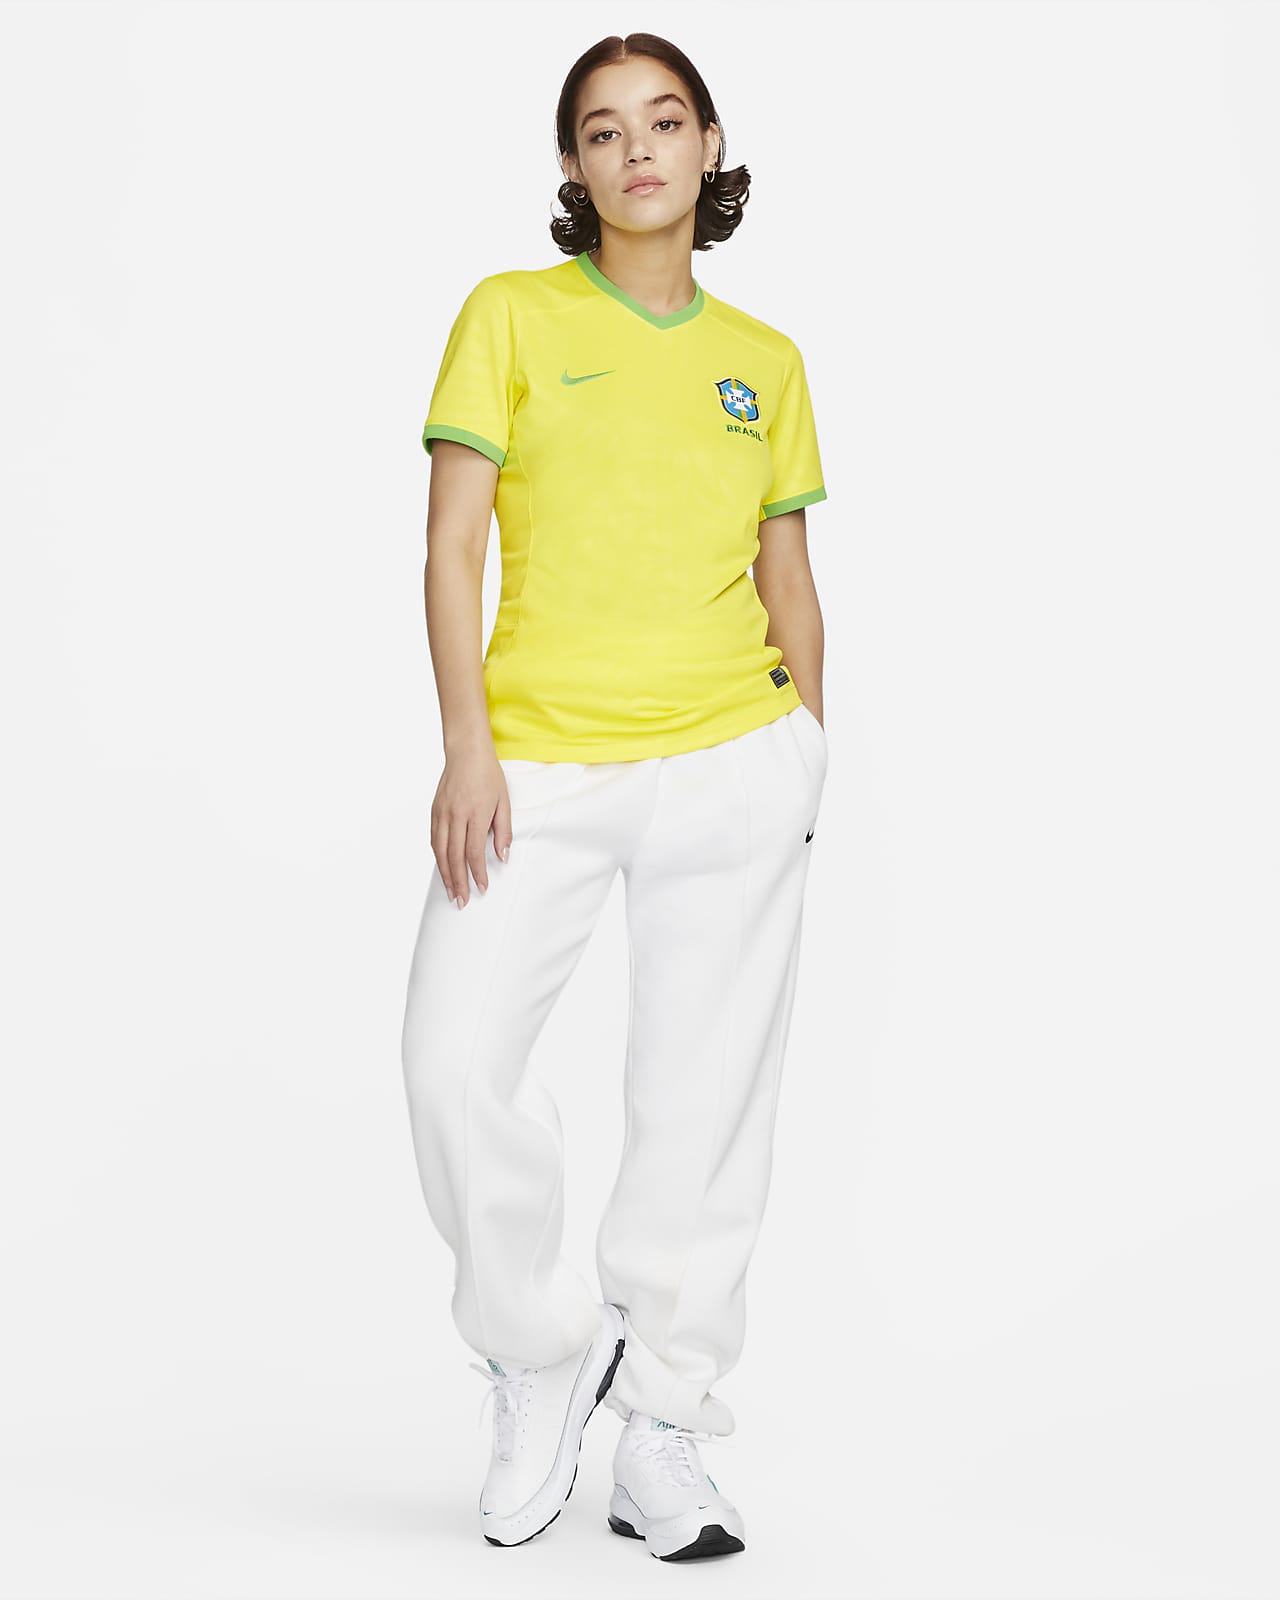 Nike Women's Flex Team Brazil Jacket